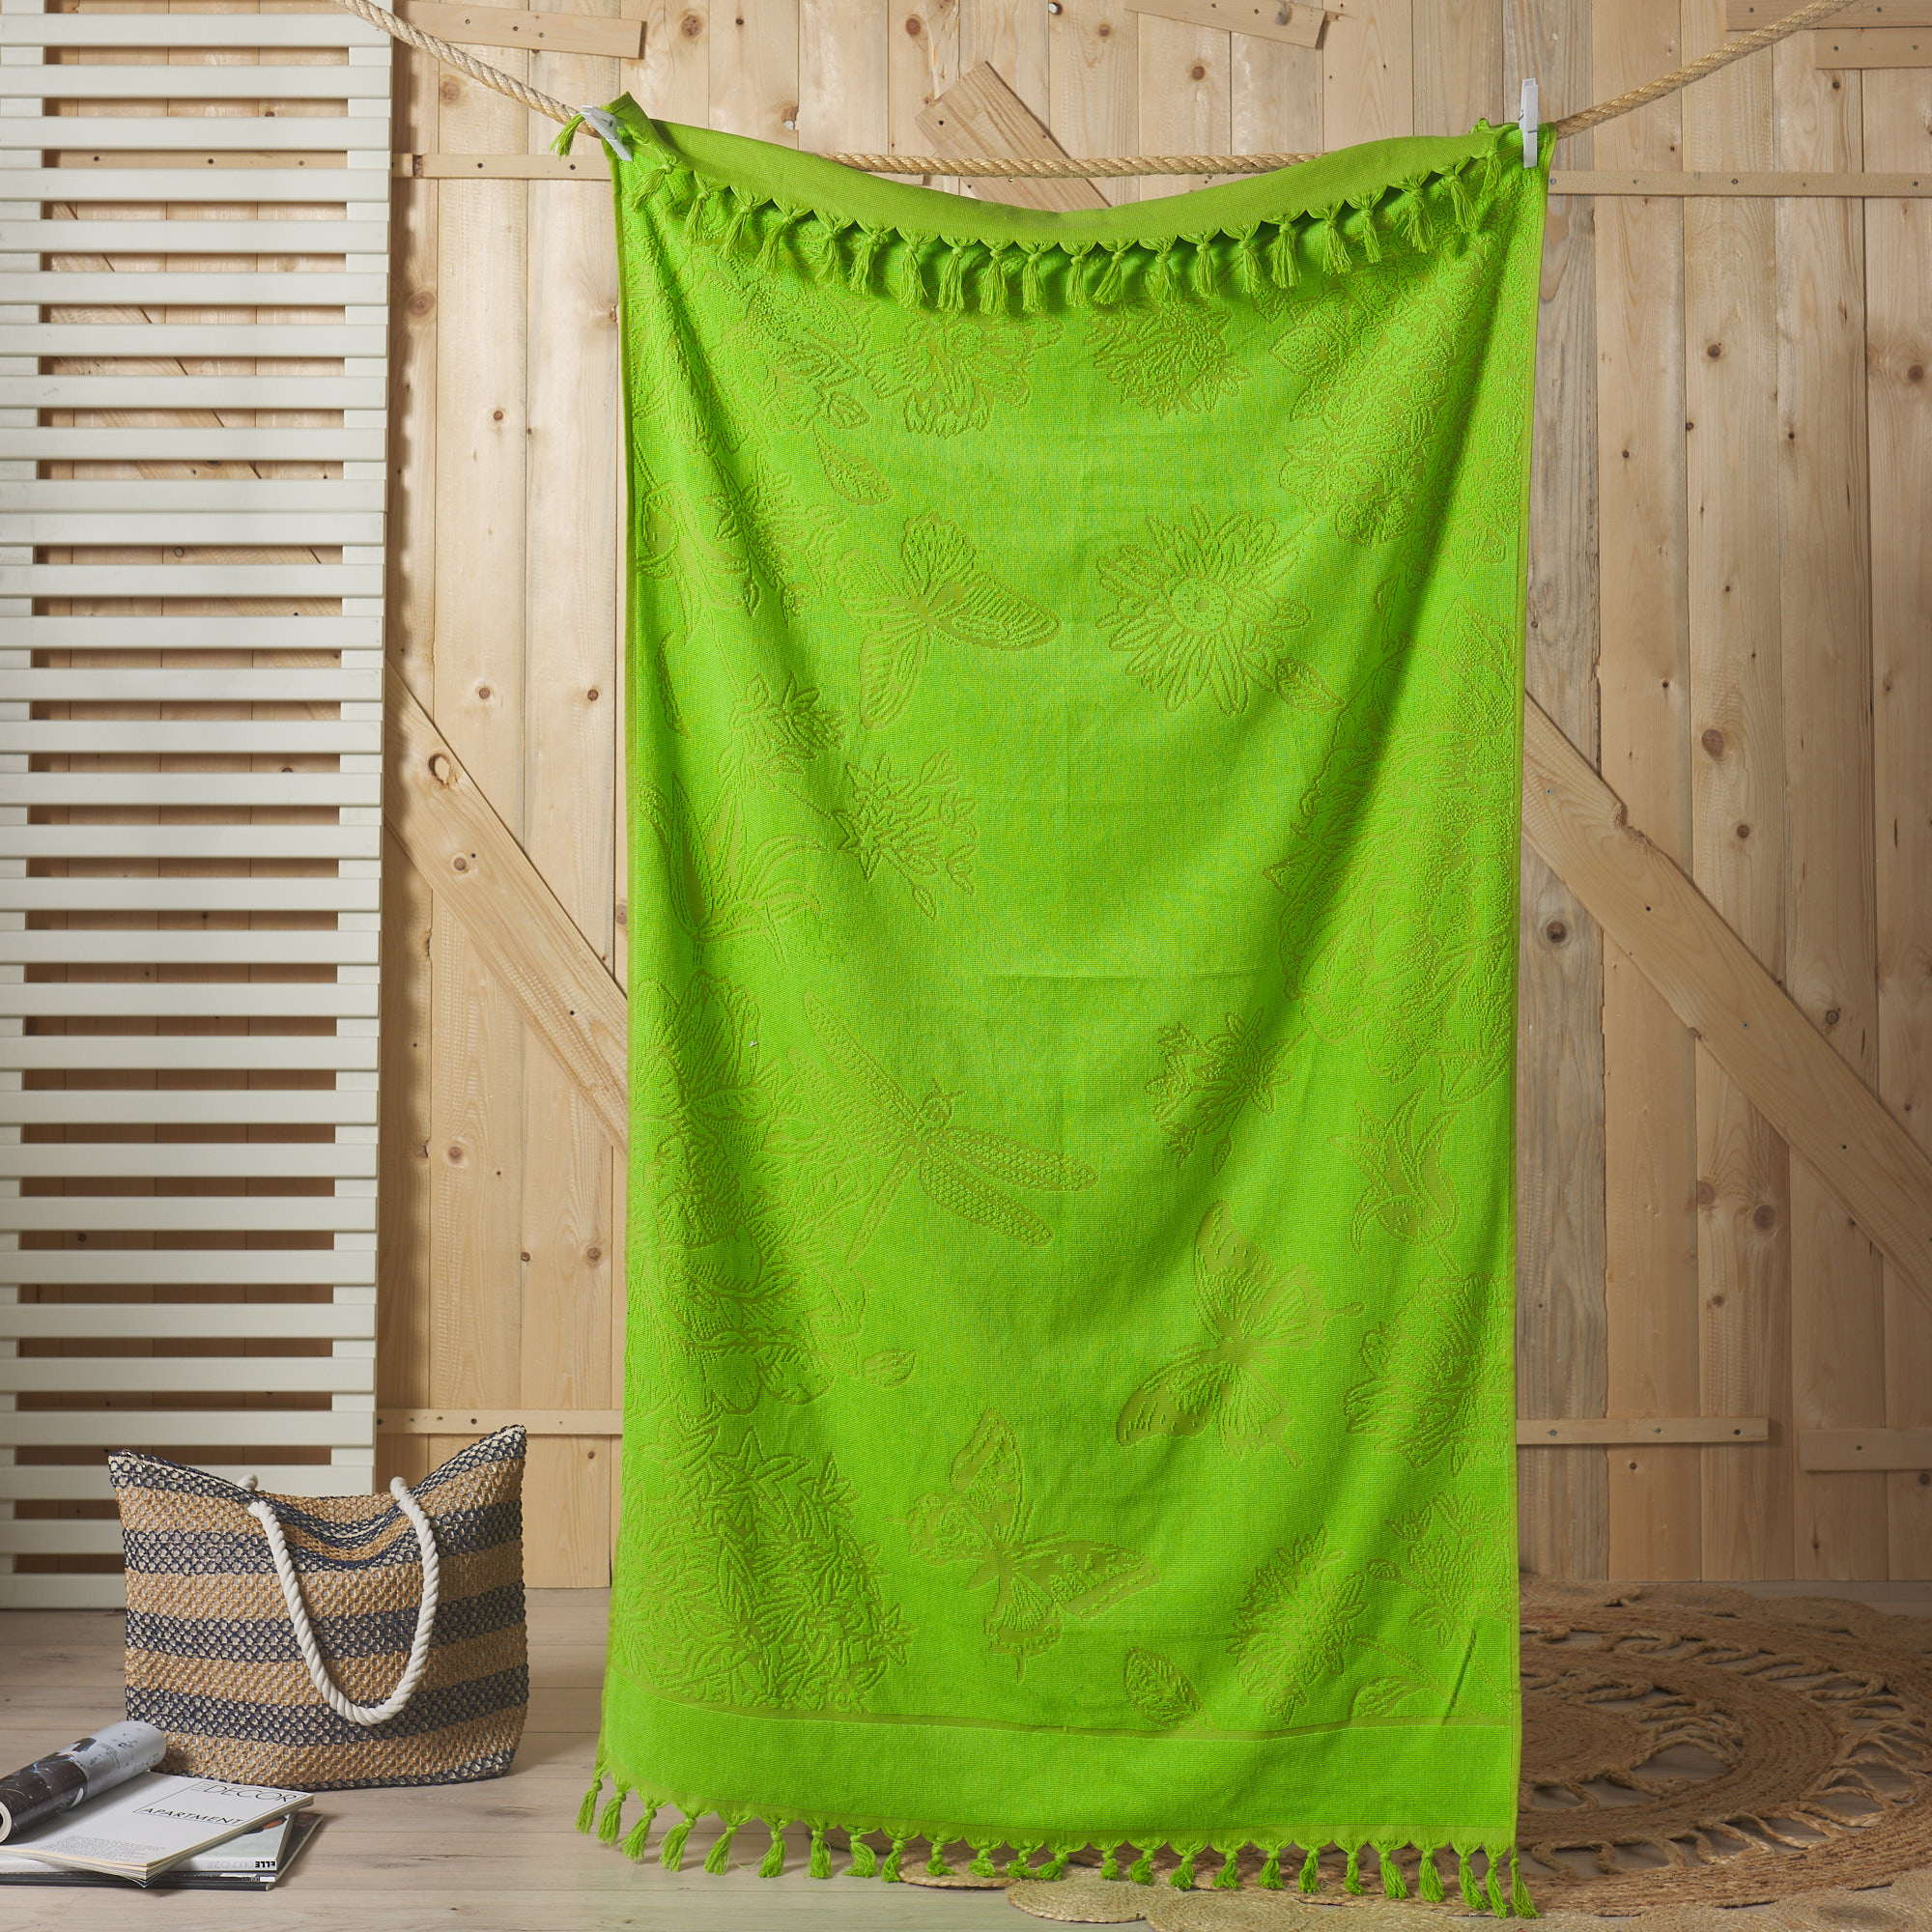 Пляжное полотенце с микроспонжем "Бабочка" Новое verde Maè